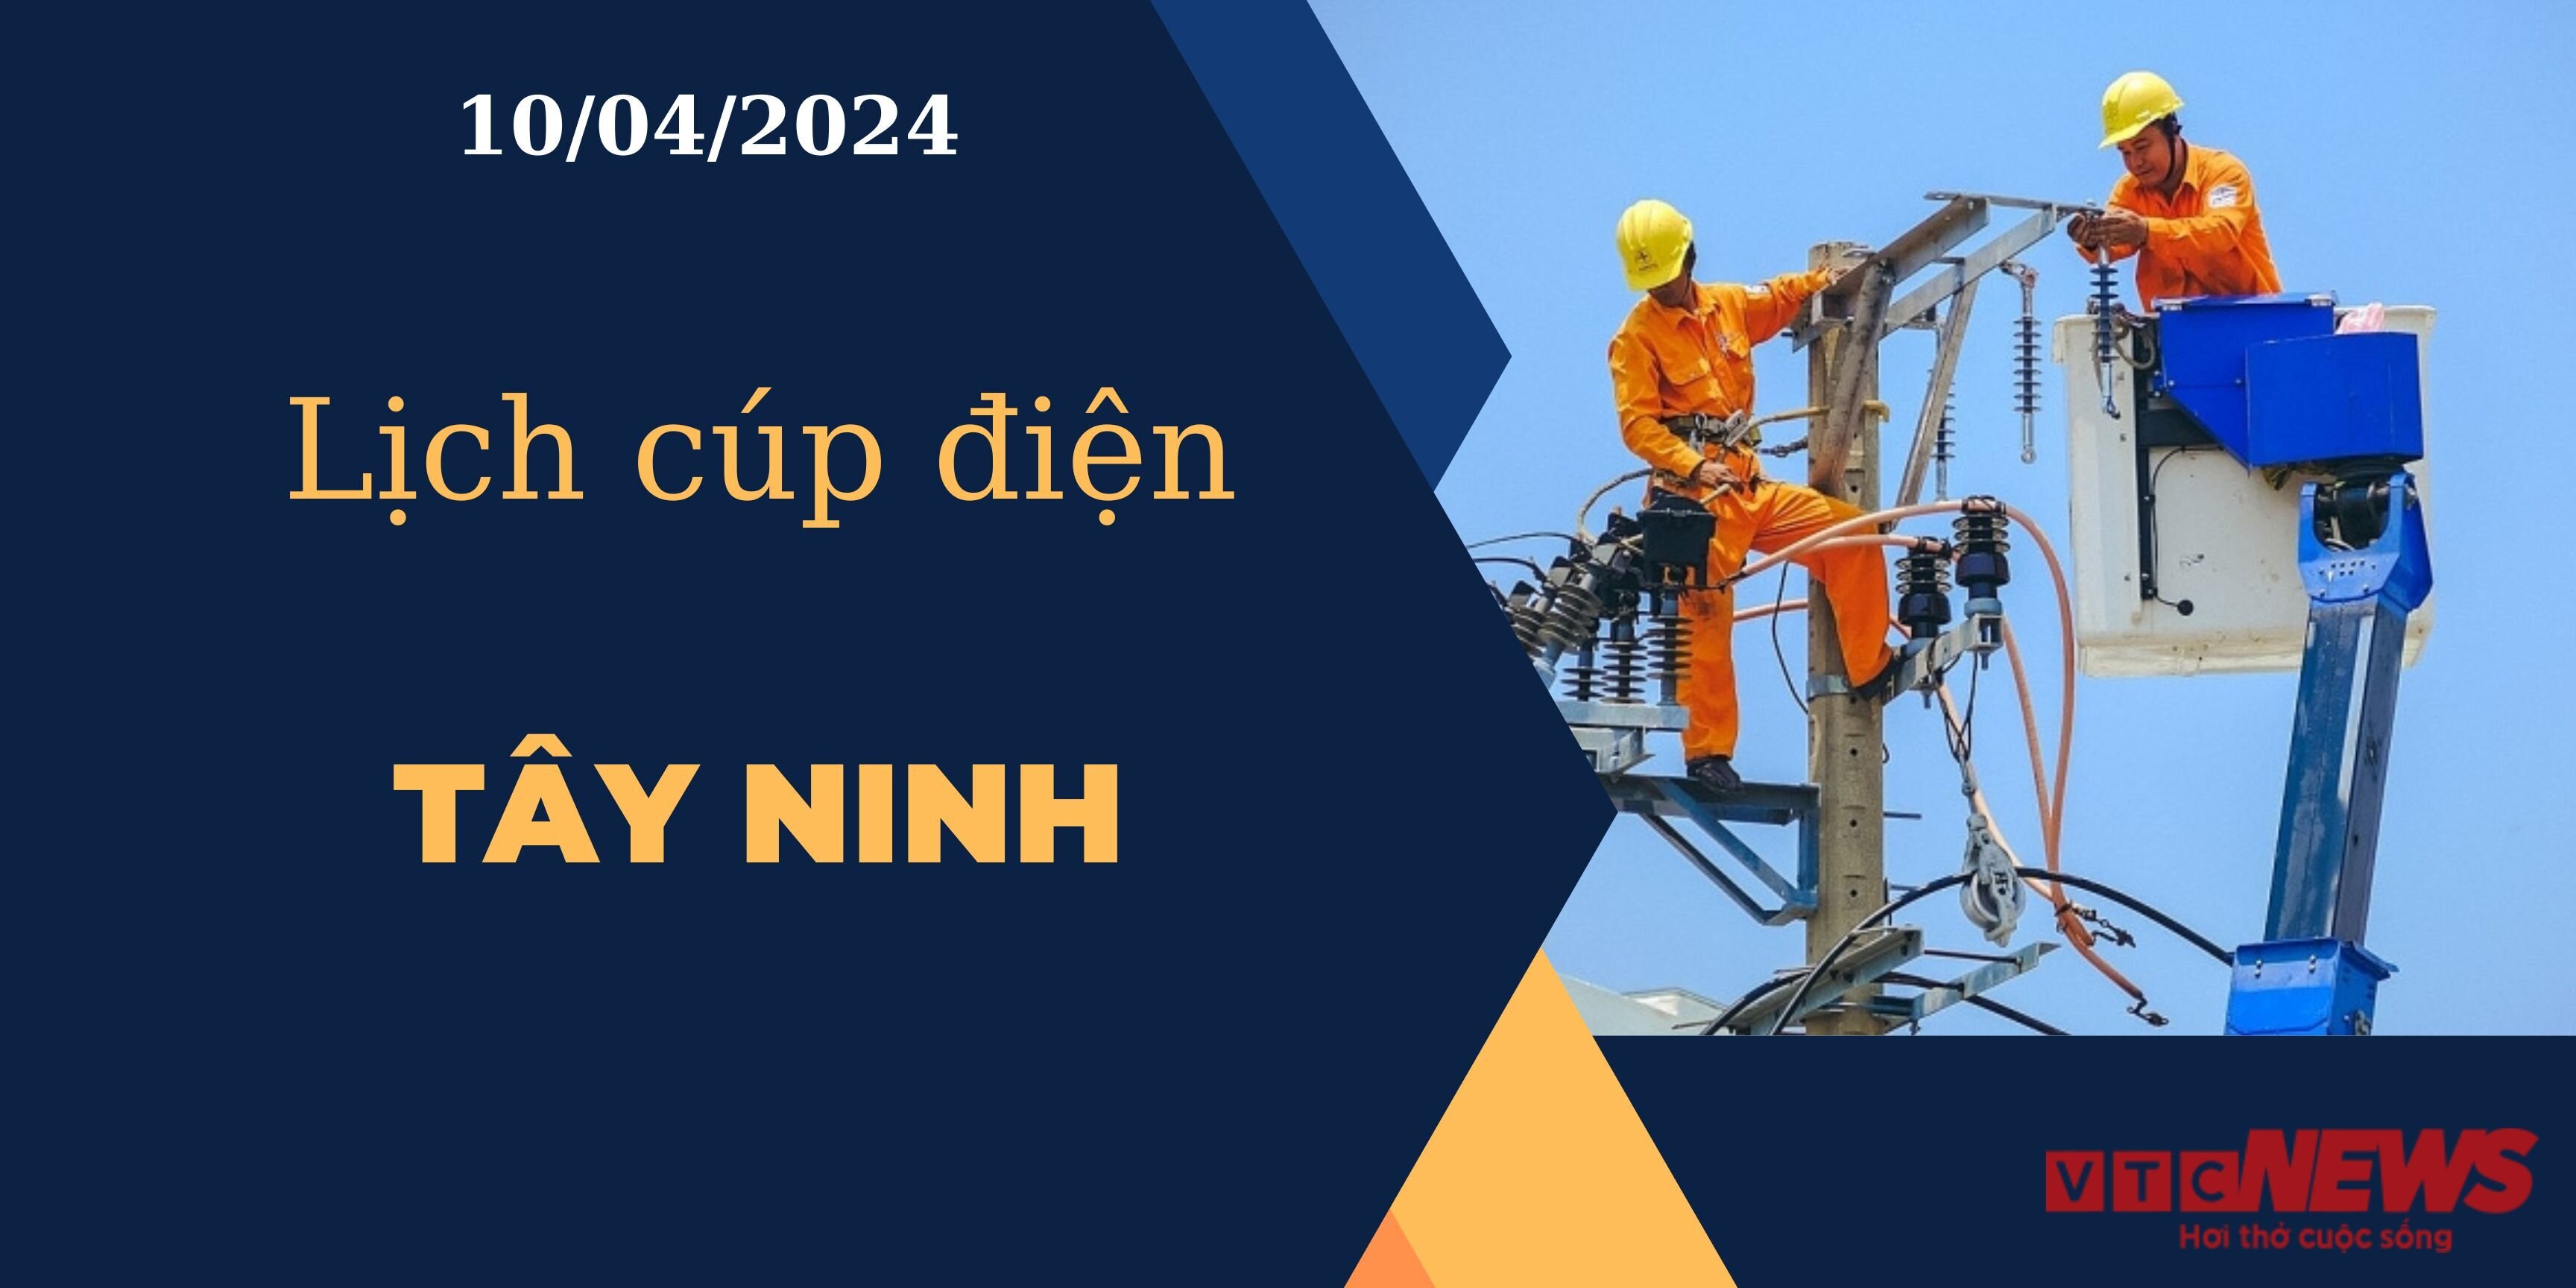 Lịch cúp điện hôm nay ngày 10/04/2024 tại Tây Ninh